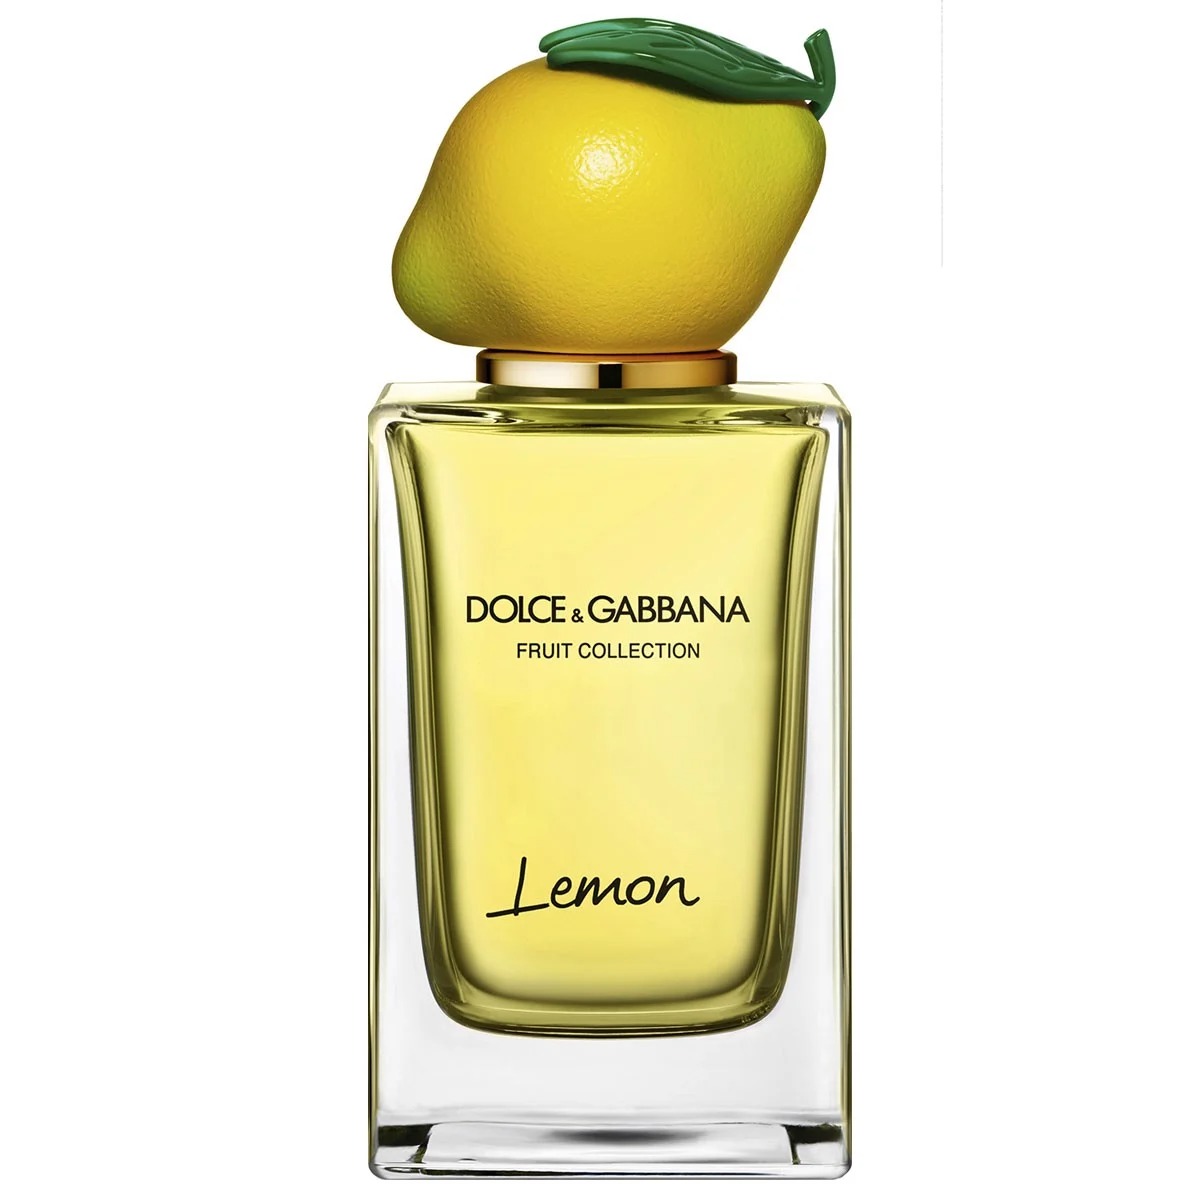 Dolce & Gabbana Lemon Eau de Toilette